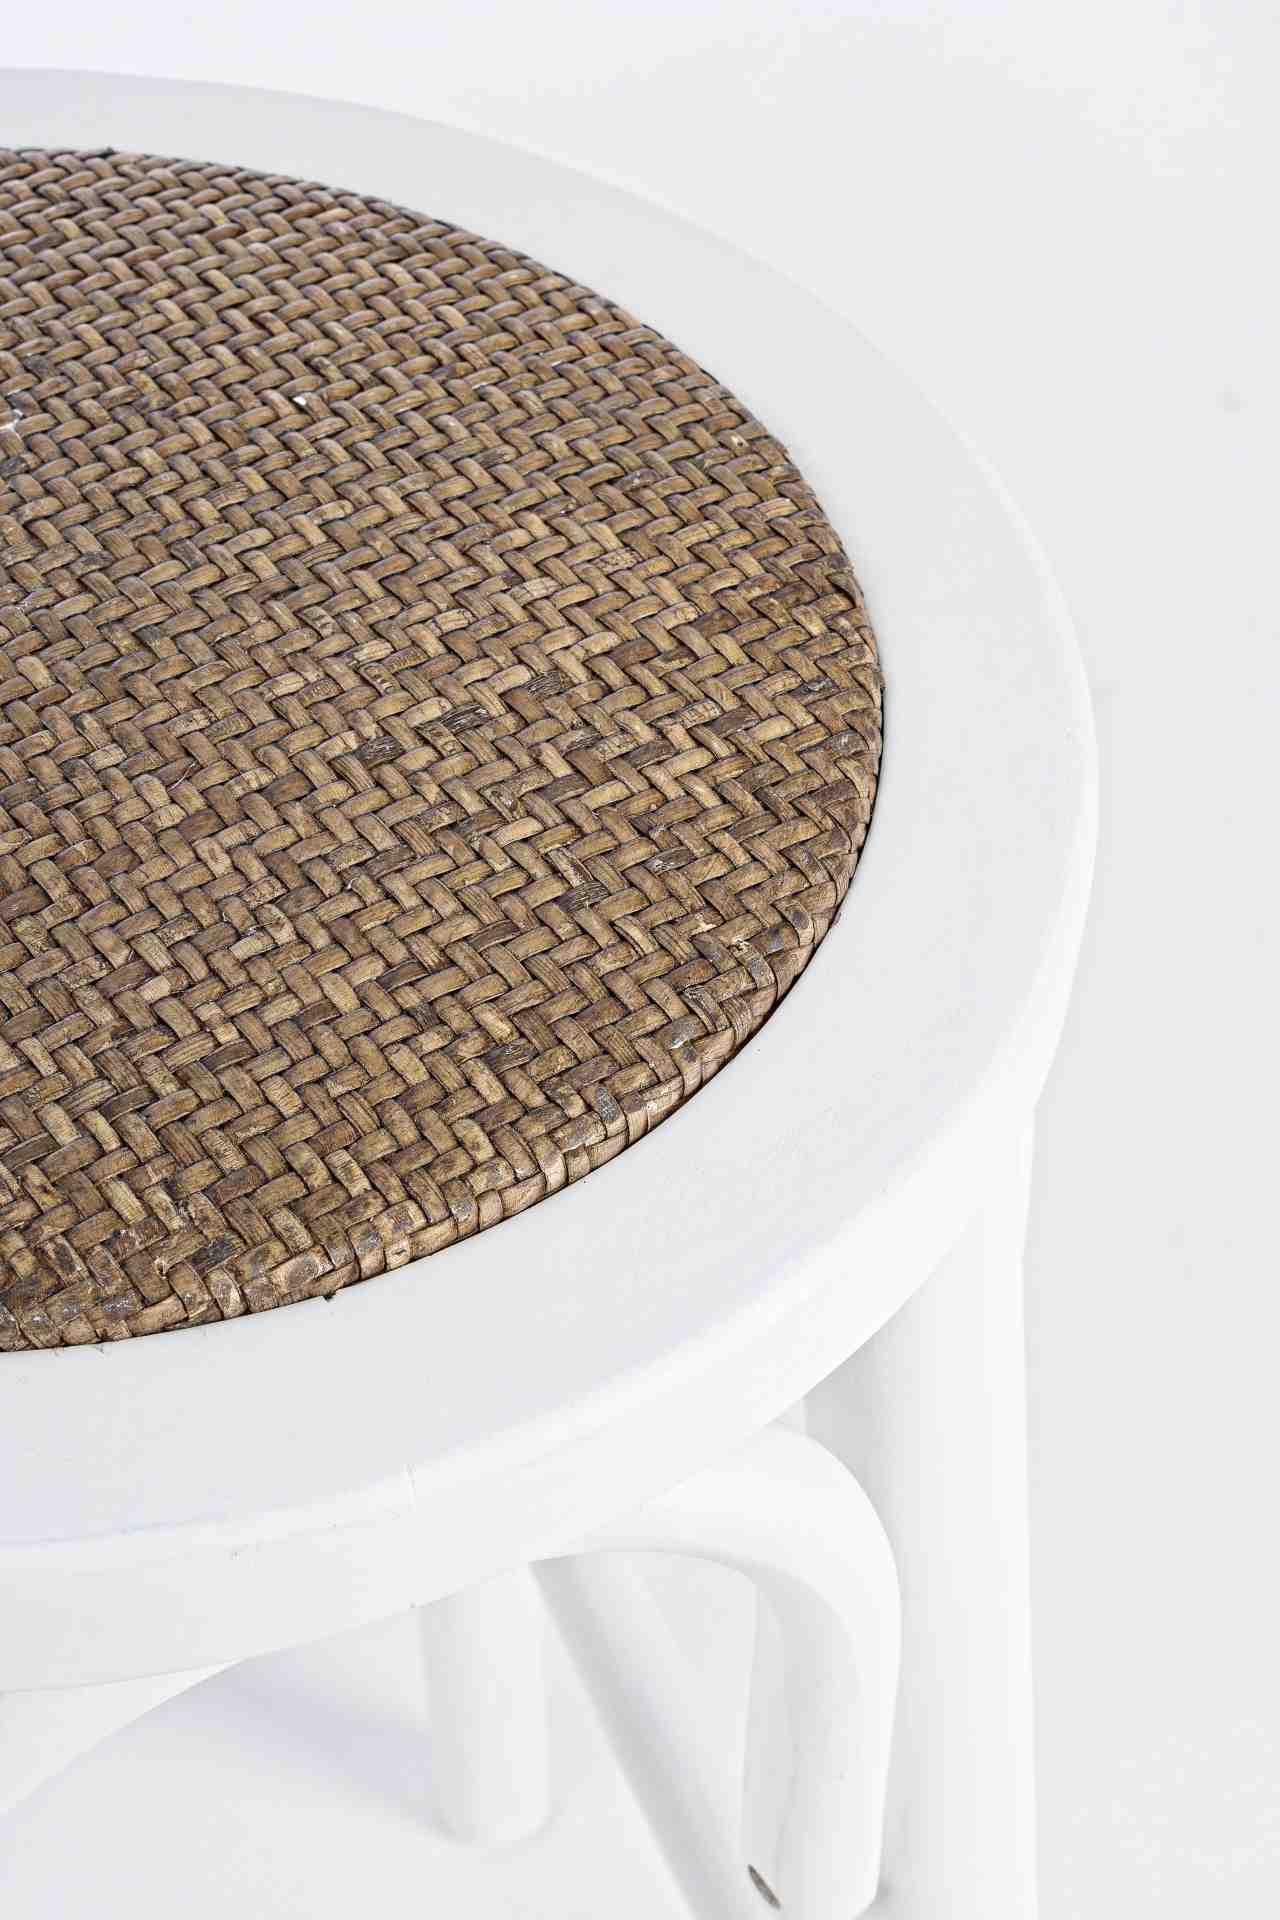 Der Barhocker Circle überzeugt mit seinem klassischen Design. Gefertigt wurde er aus Ulmenholz, welches einen weißen Farbton besitzt. Die Sitzfläche ist aus natürlichem Ratten Geflecht. Die Sitzhöhe des Hockers beträgt 73 cm.